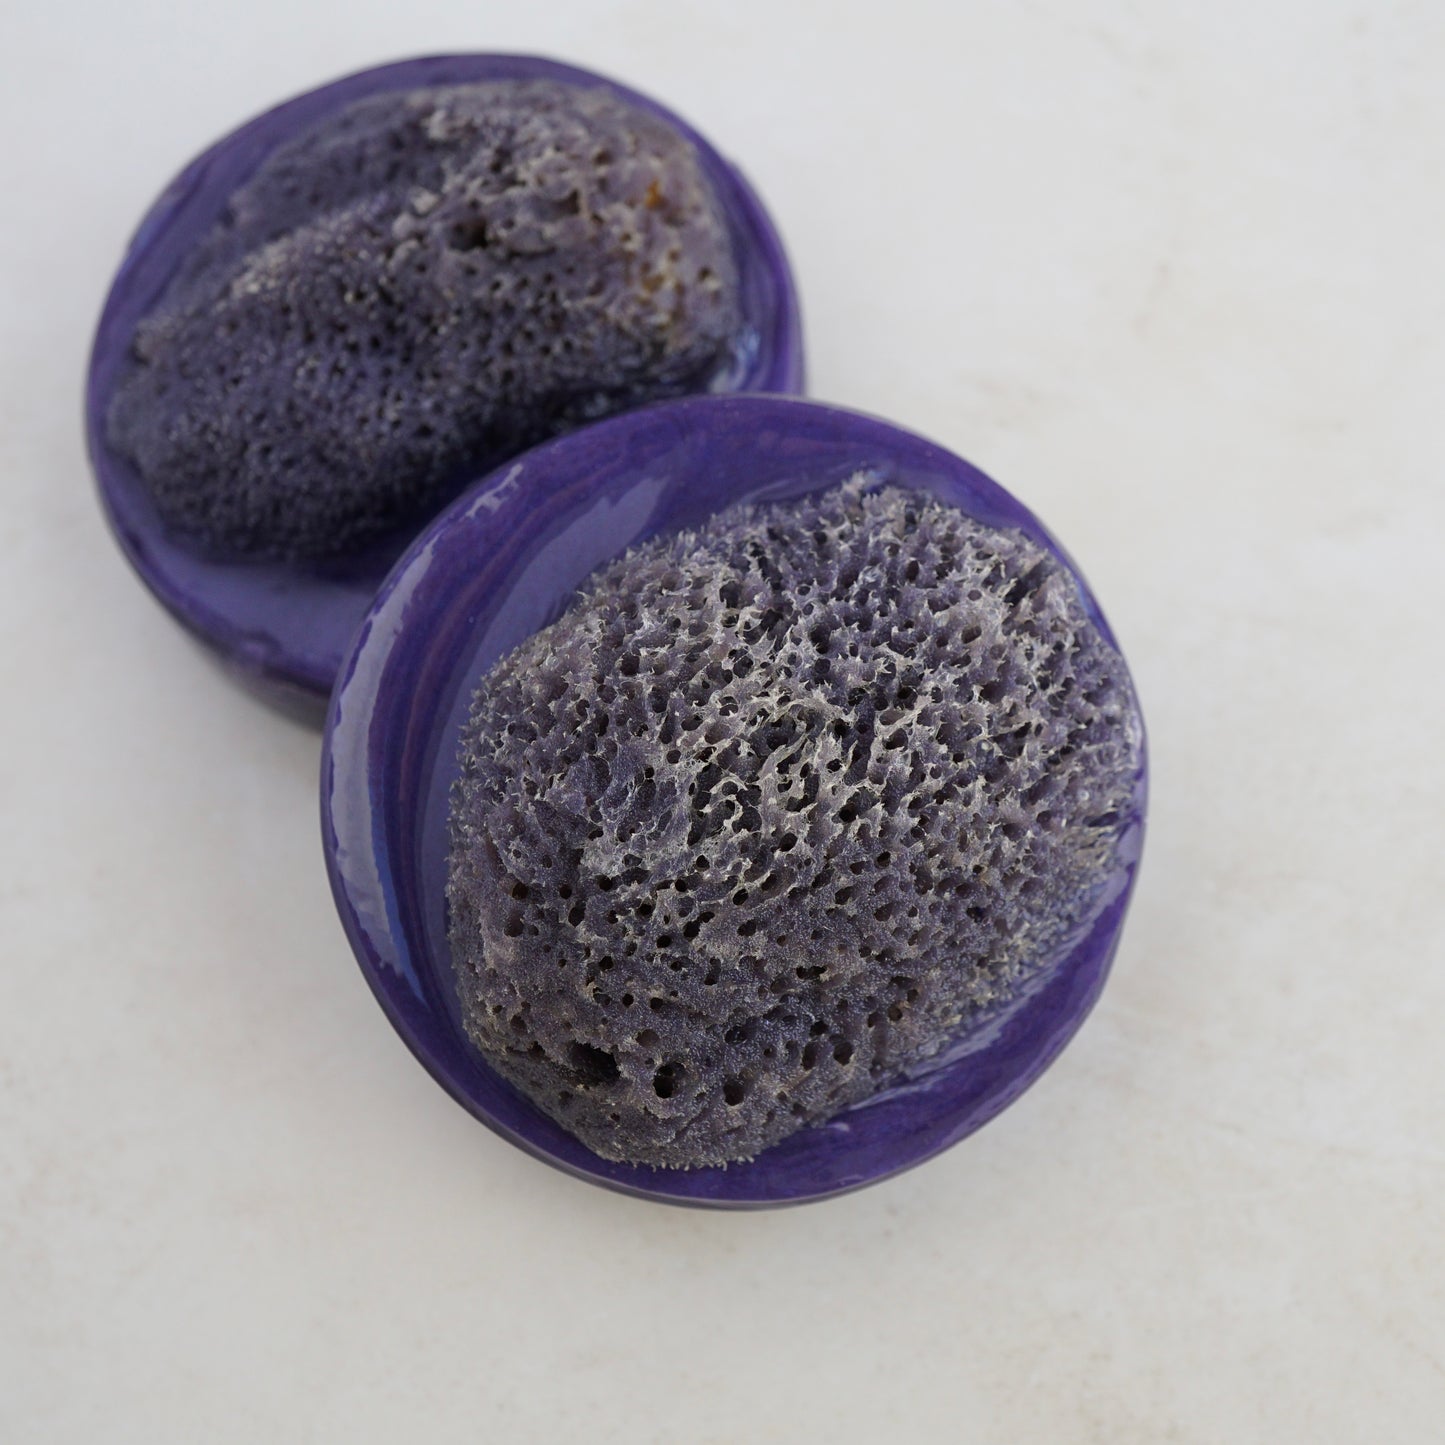 Grenada Sponge Soap - Silk Sea Sponge in Glycerin Soap